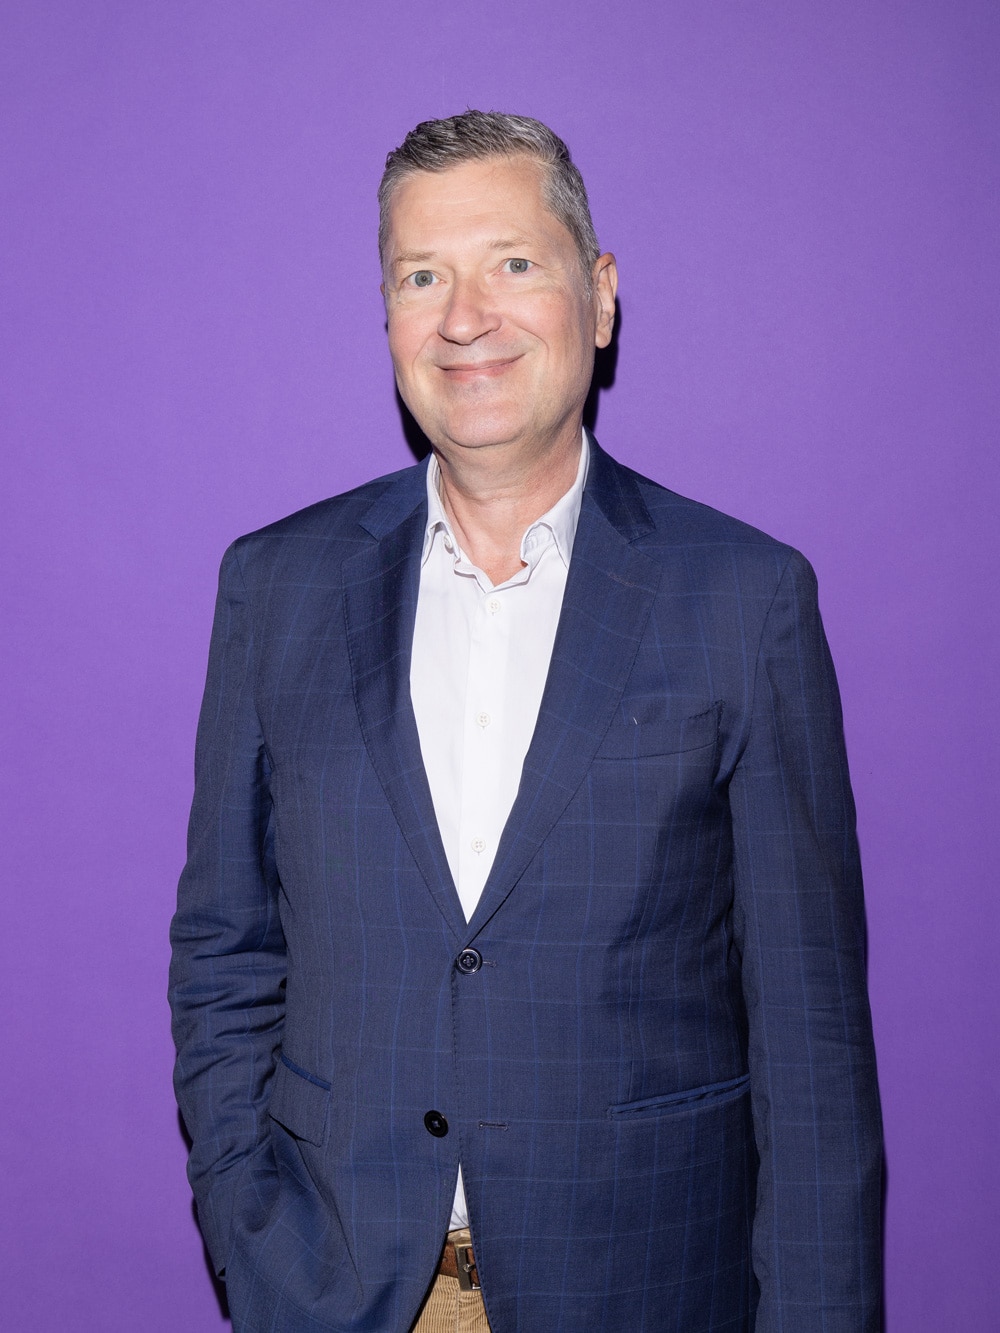 Porträt von Pius Sidler. Mann mit dunkelblauem Blazer auf violettem Hintergrund.